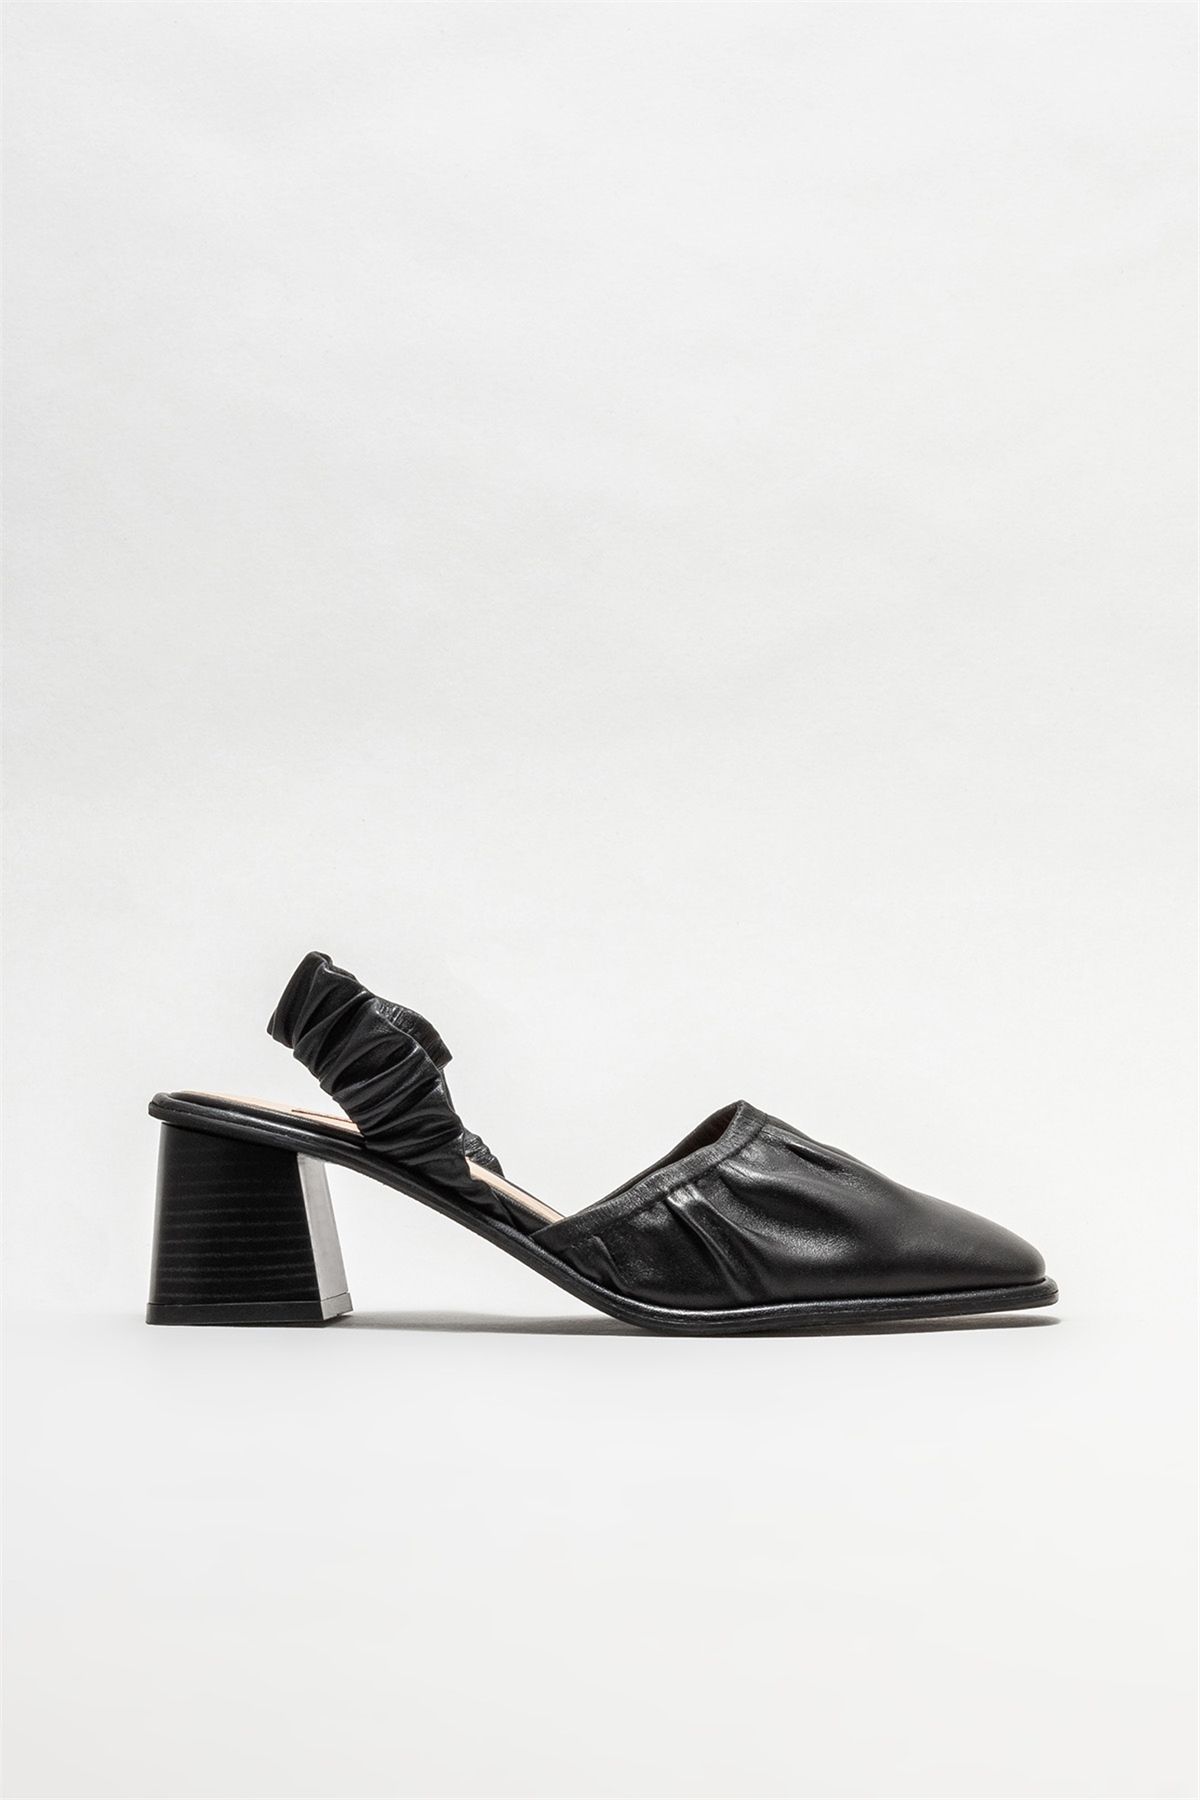 Elle Siyah Deri Kadın Topuklu Ayakkabı